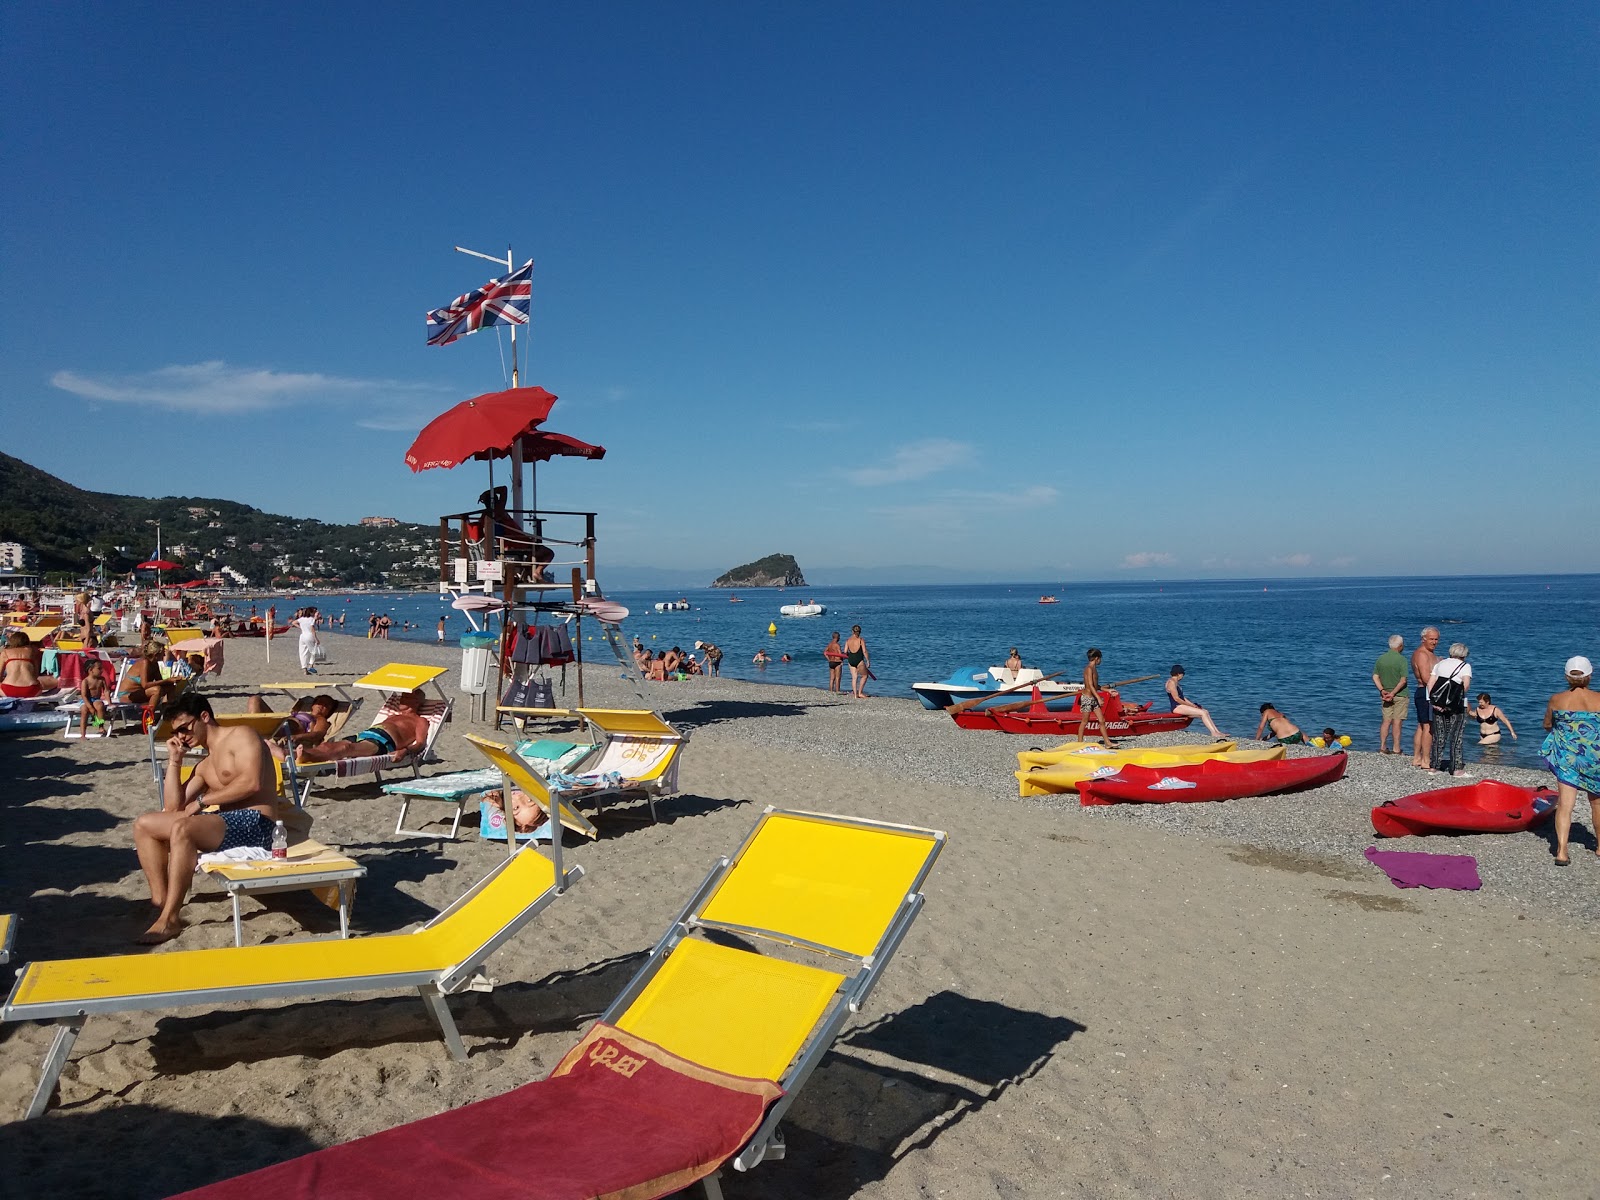 Photo de Spotorno beach - endroit populaire parmi les connaisseurs de la détente